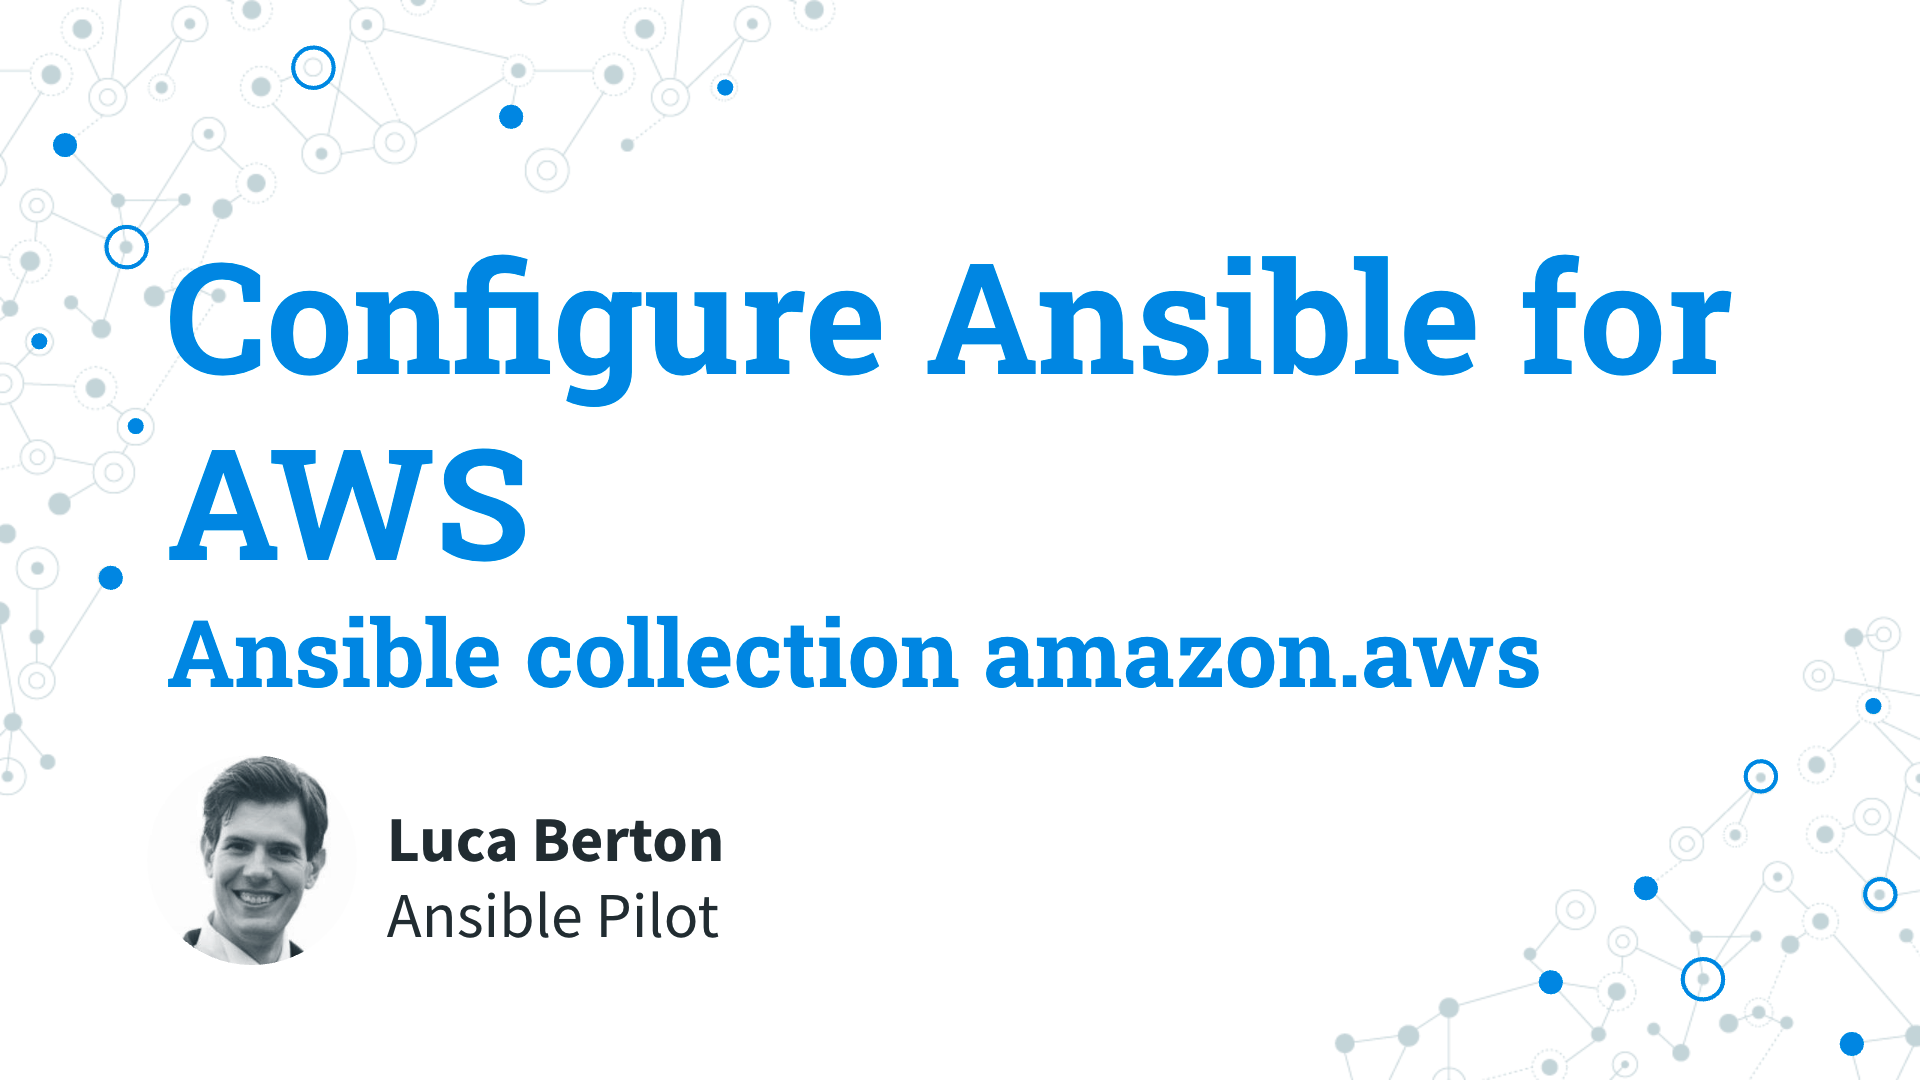 Configure Ansible for AWS - ansible collection amazon.aws